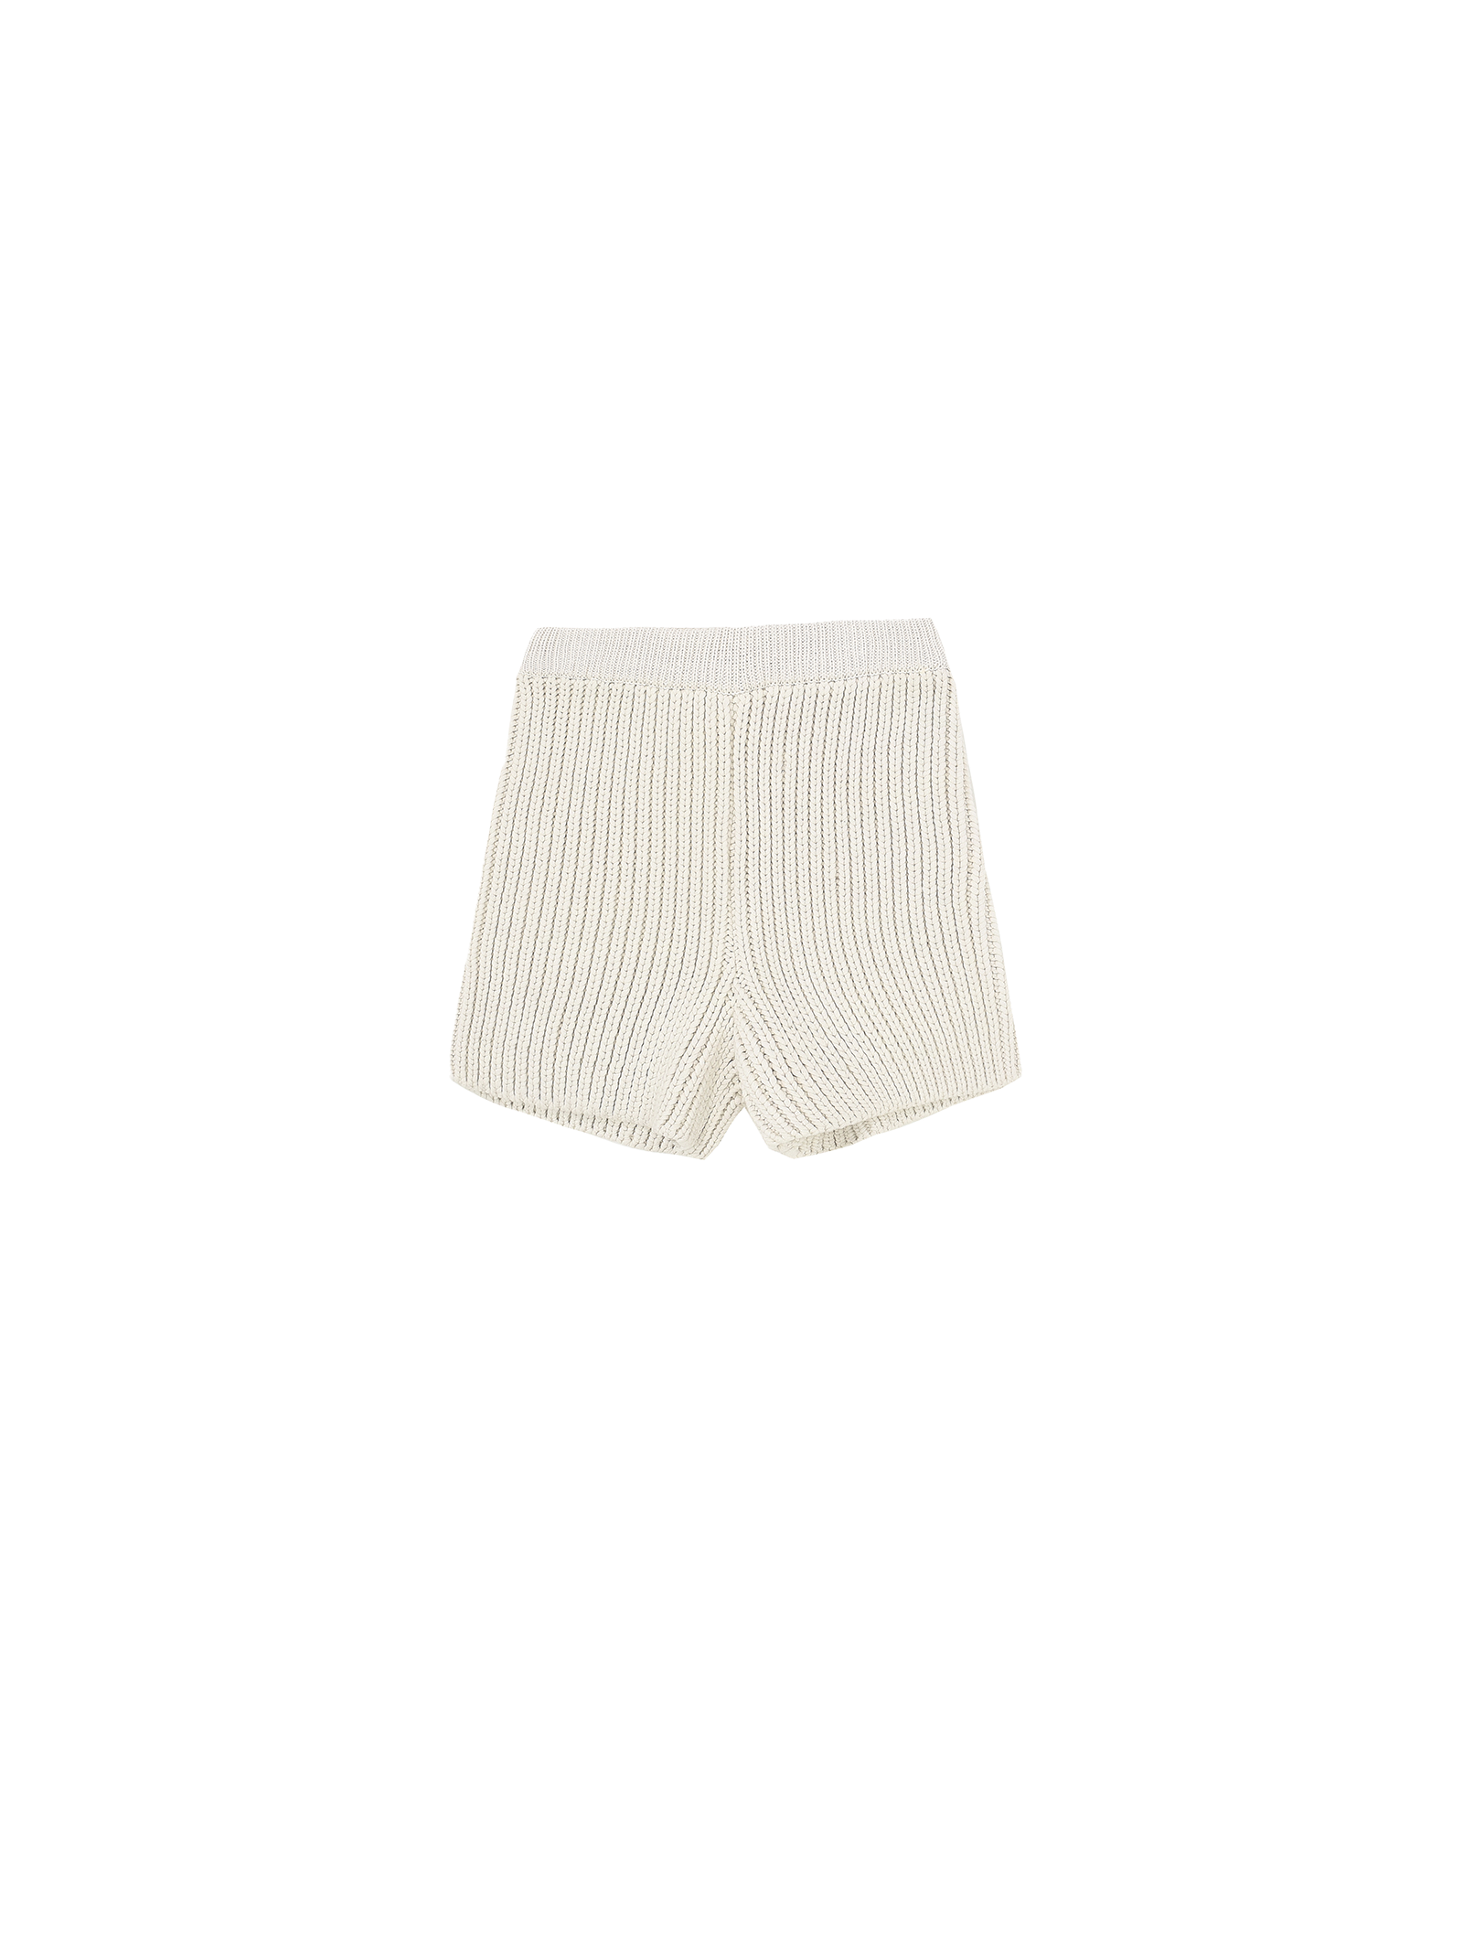 Cozy Knit Shorts / White